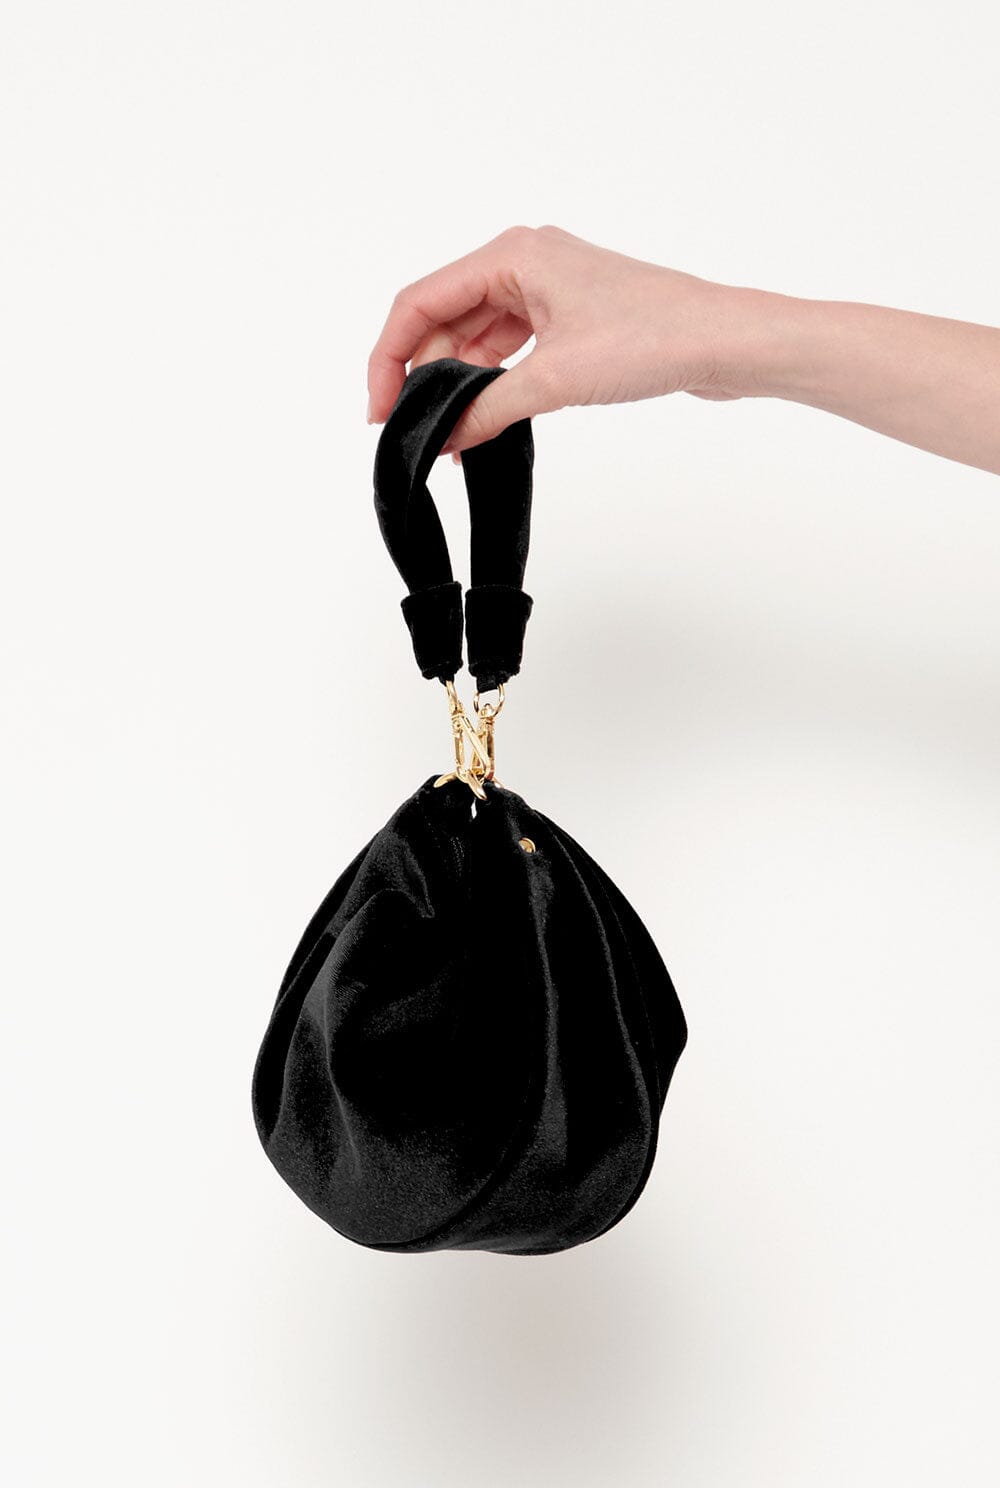 The Baby Gondola bag velvet Black Hand bags The Bag Lab 